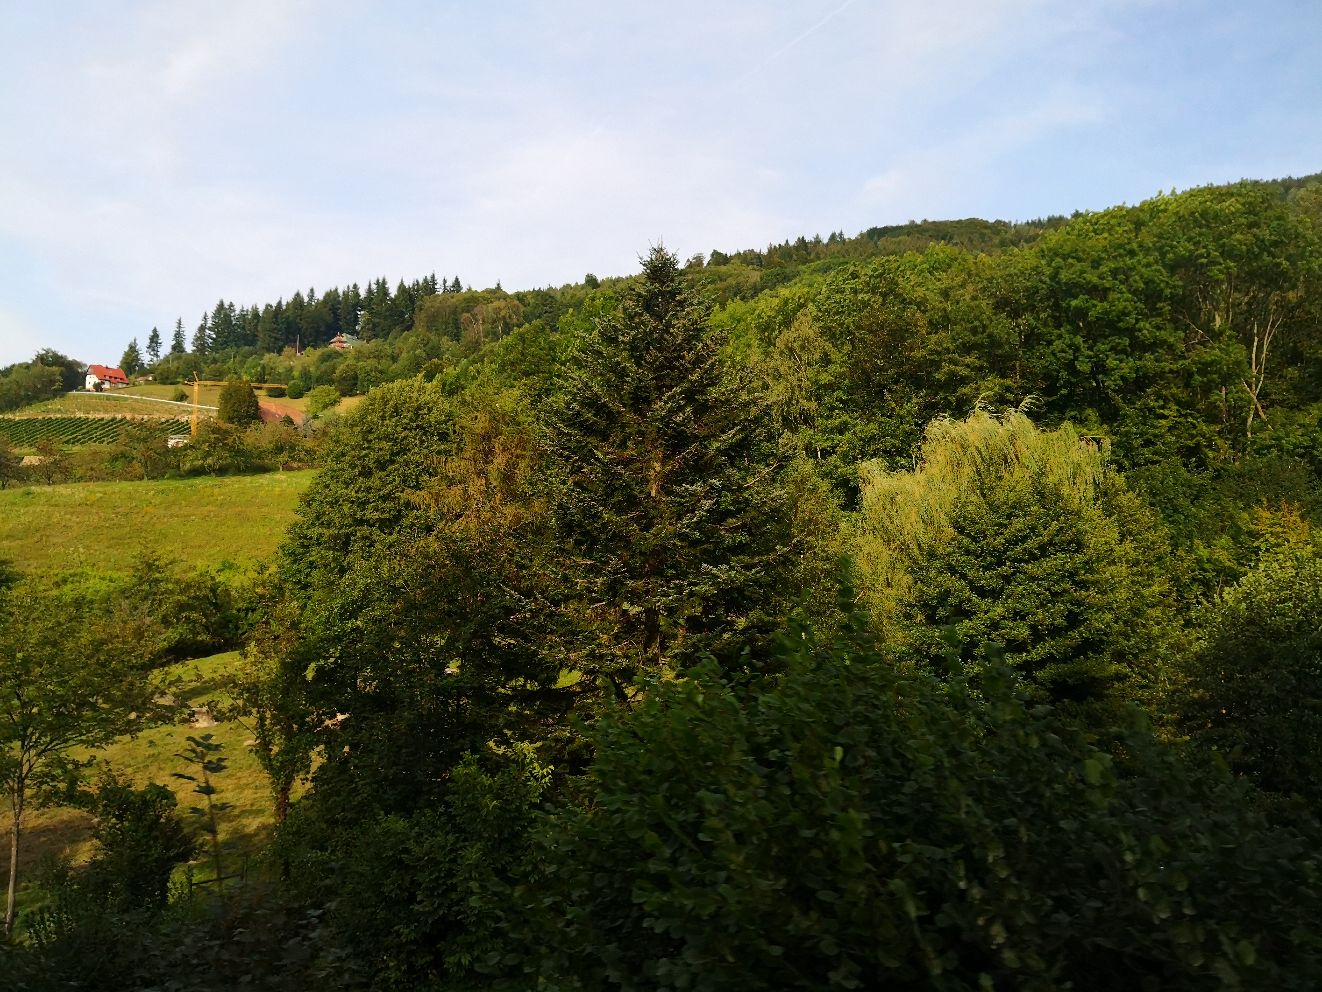 黑森林南部的沿途风景，树林不再相连成片，景色风格逐渐接近瑞士的特征，树林间的山坡被开辟成草地牧场，风